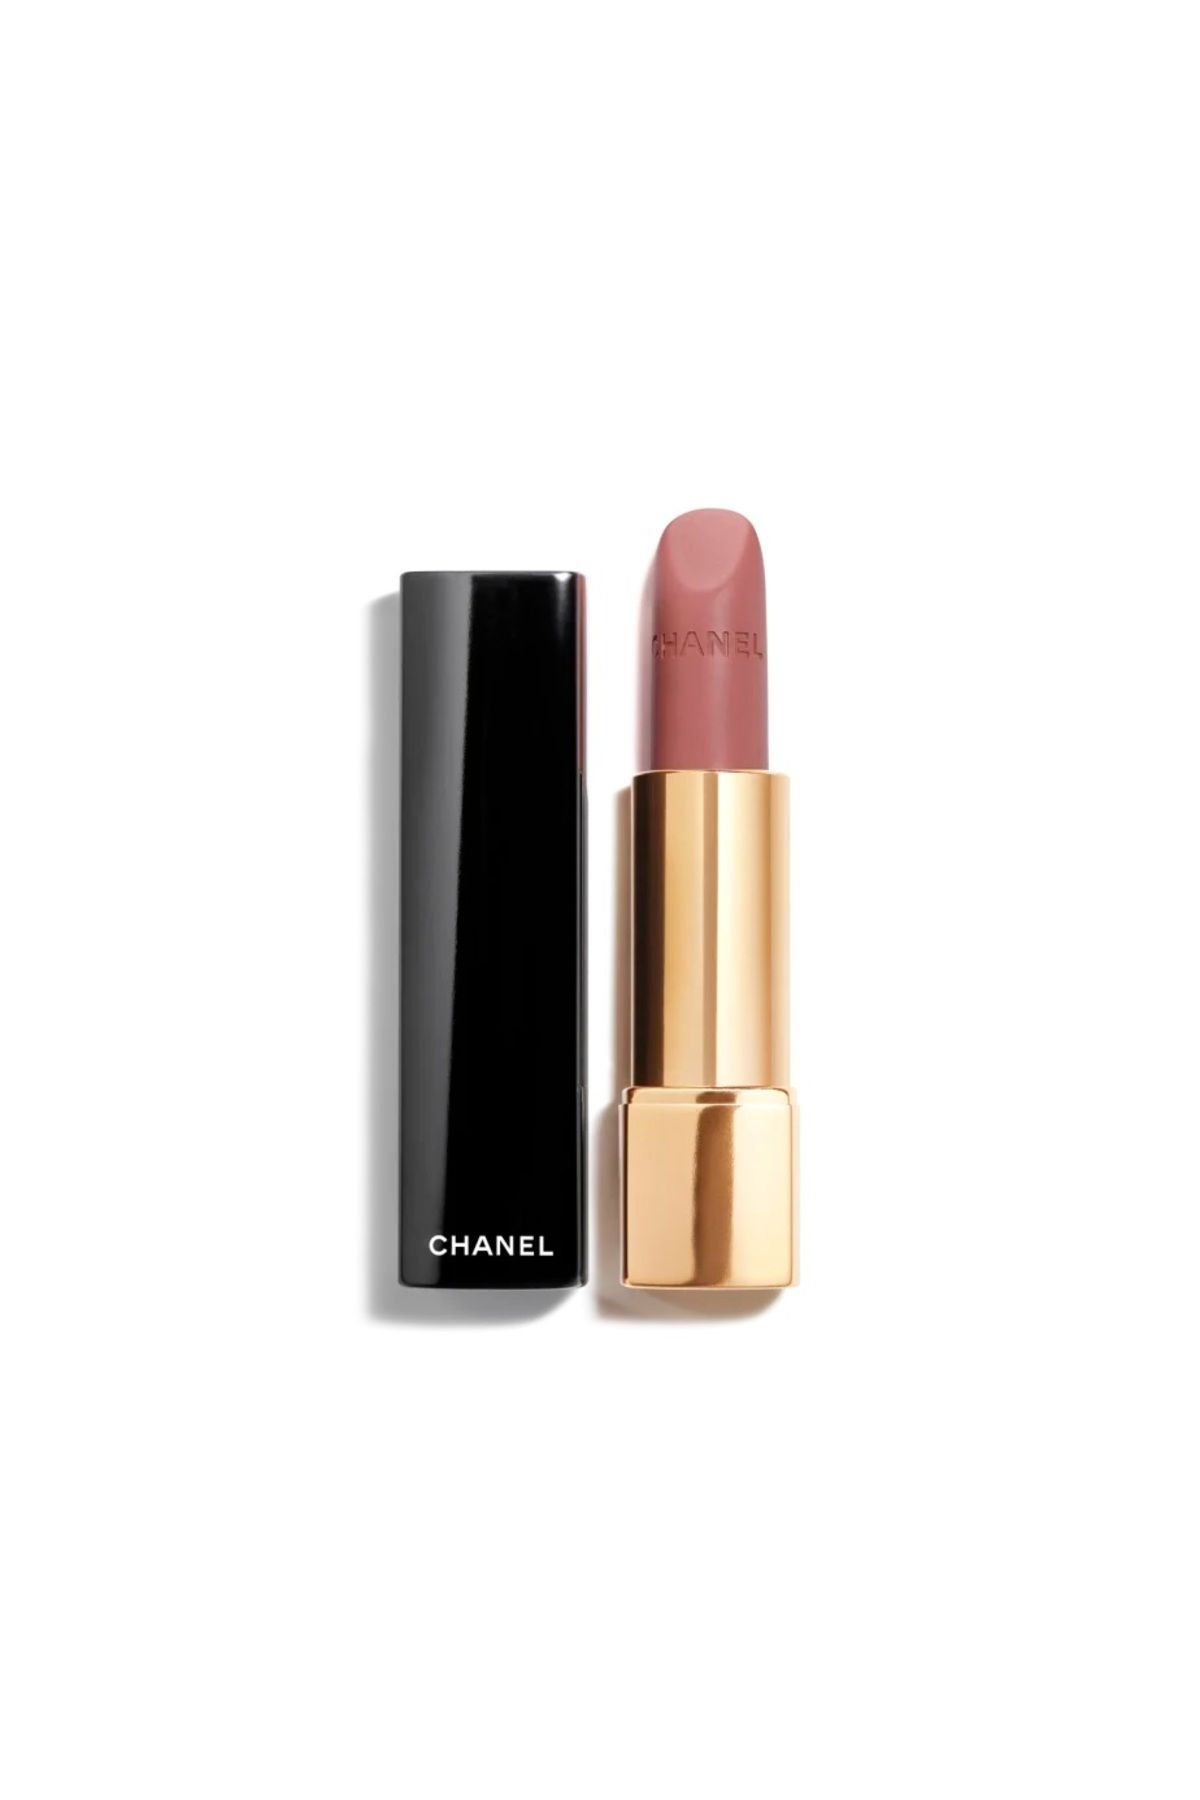 Chanel ROUGE ALLURE VELVET-Nemlendirici Uzun Süre Kalıcı Yoğun Pigmentli Işıltılı Mat Ruj 3.5G